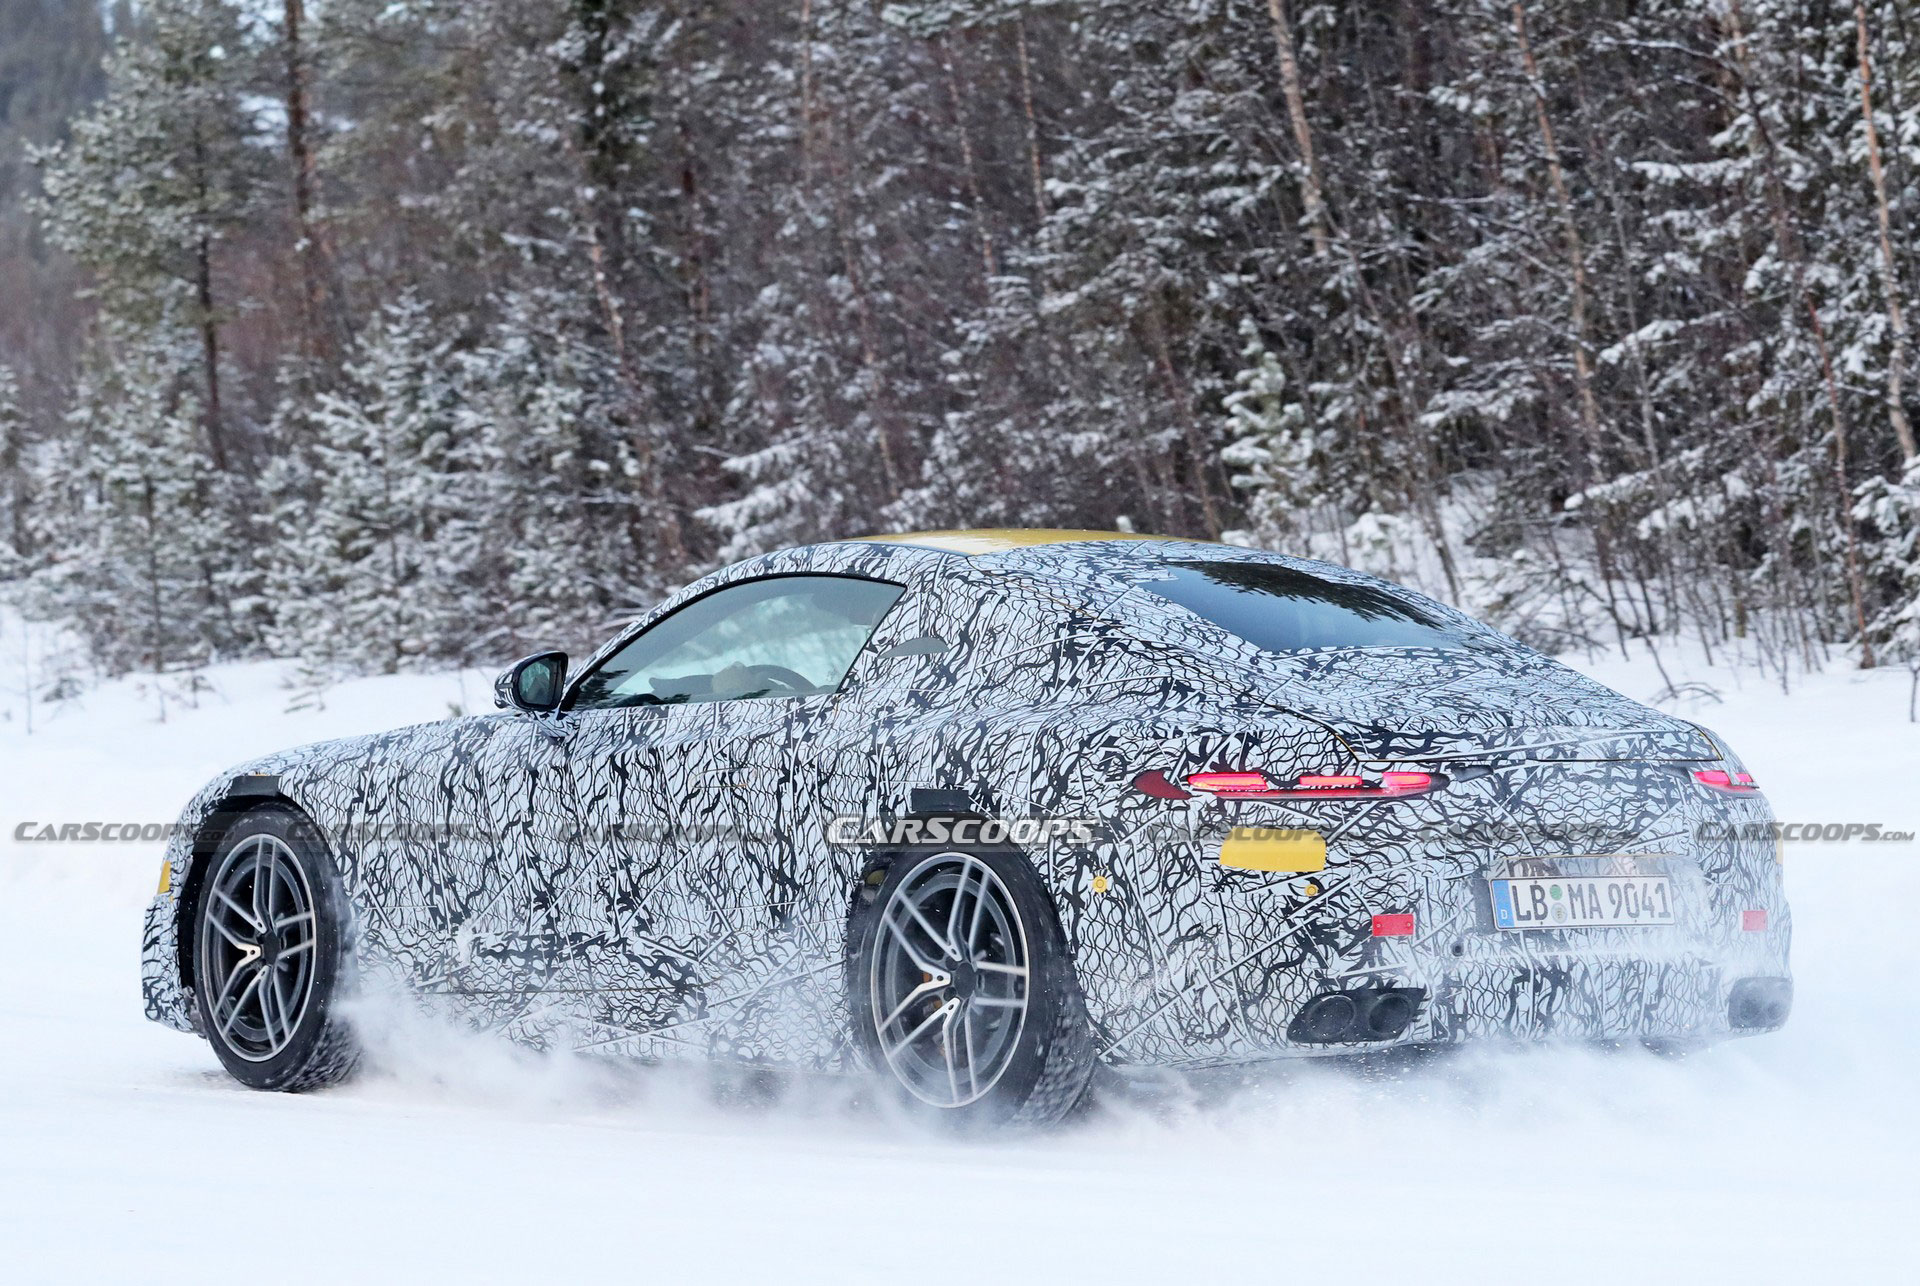 格栅设计有所降低 全新梅赛德斯-AMG GT冬测谍照